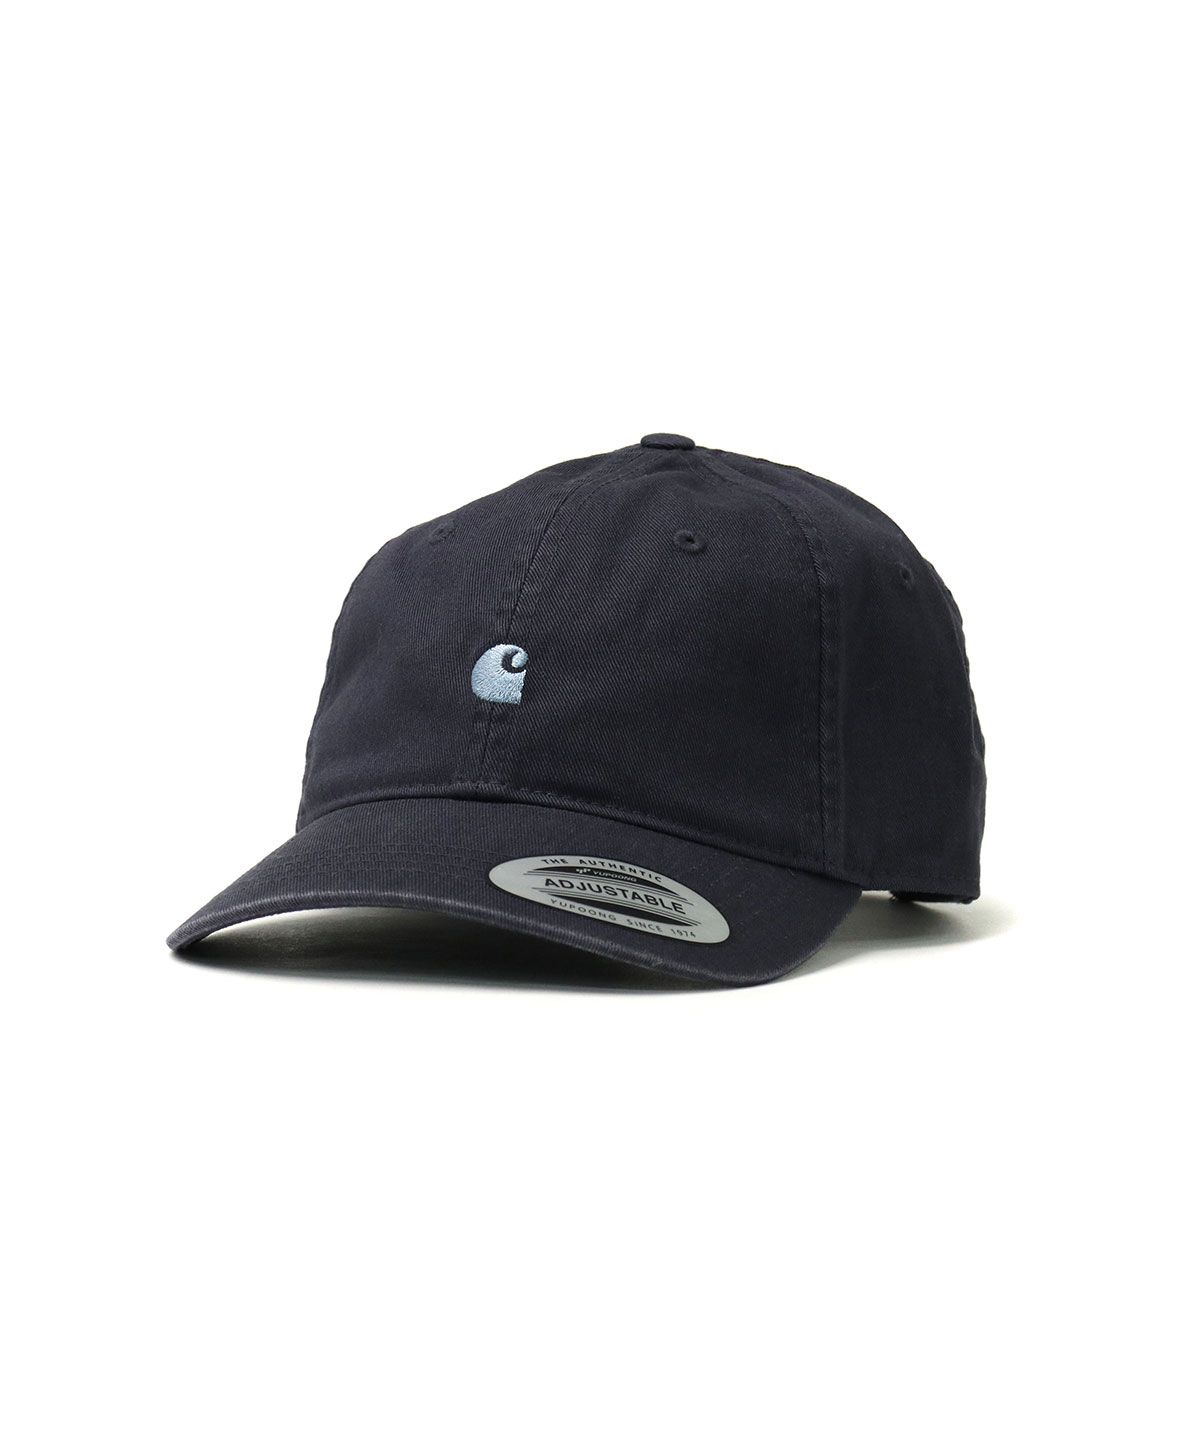 【日本正規品】 カーハート キャップ Carhartt WIP MADISON LOGO CAP マディソンロゴキャップ 帽子 フリーサイズ  I023750